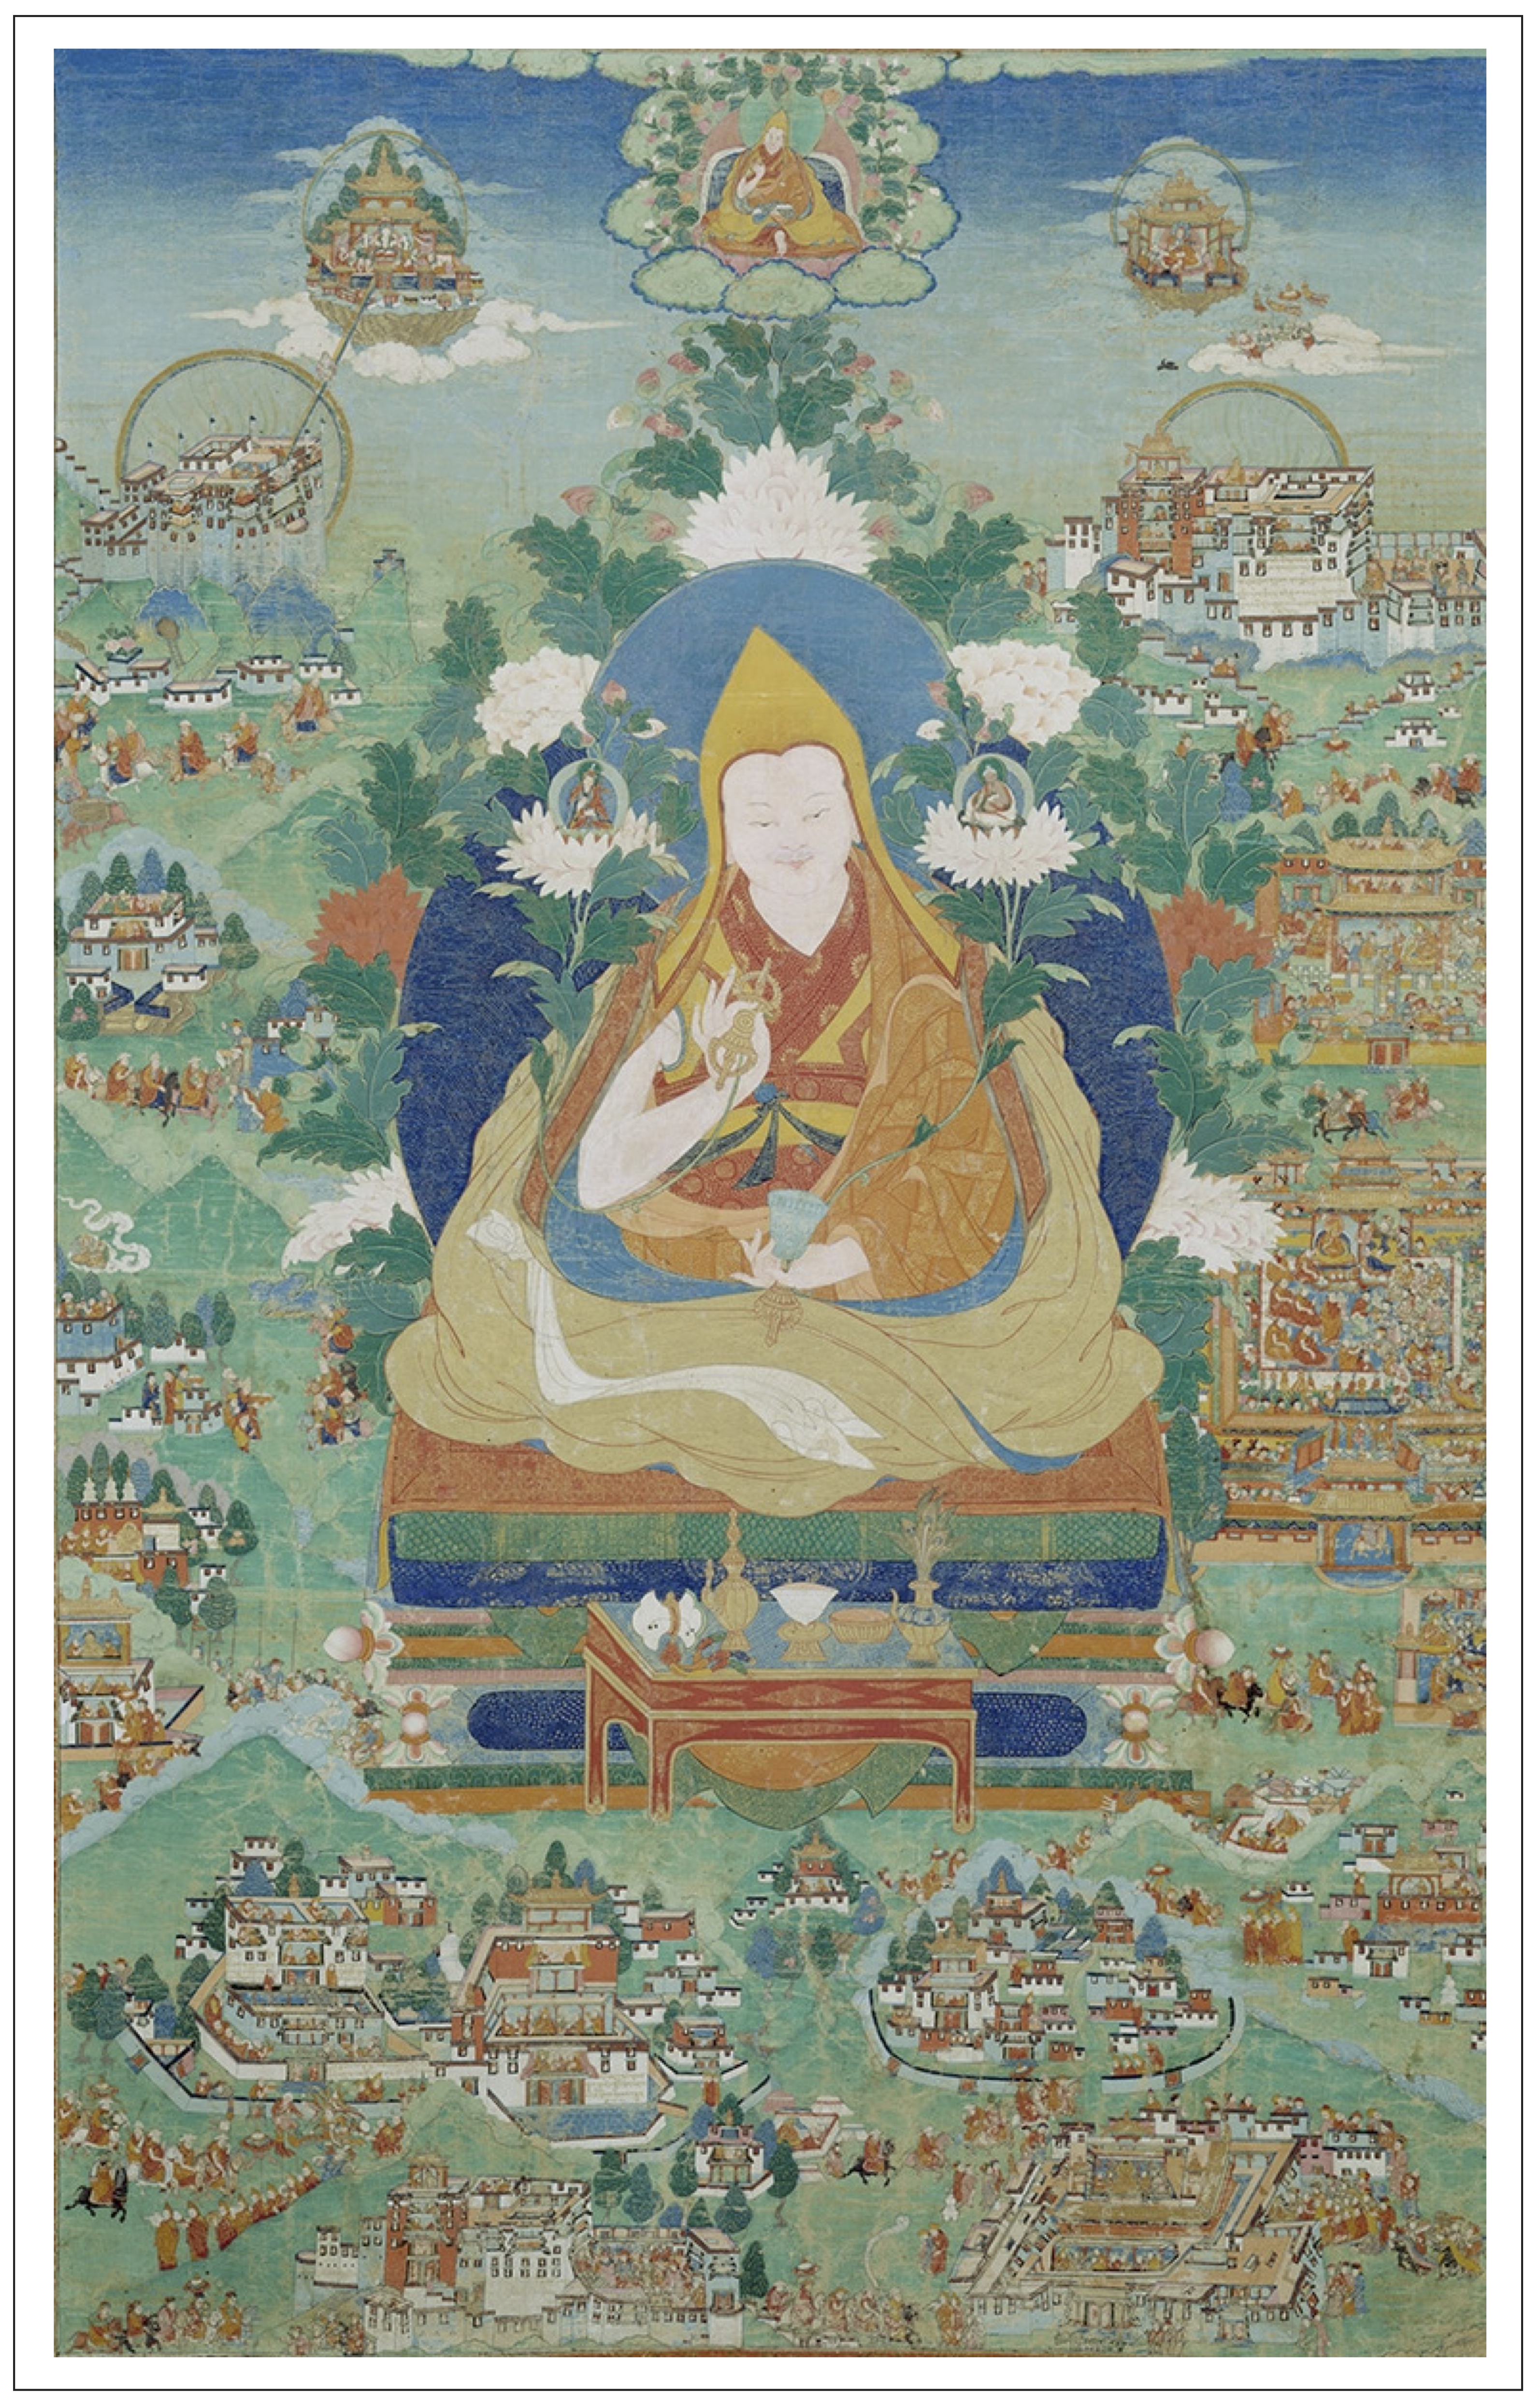 Ngawang Lobsang Gyatso, the Fifth Dalai Lama